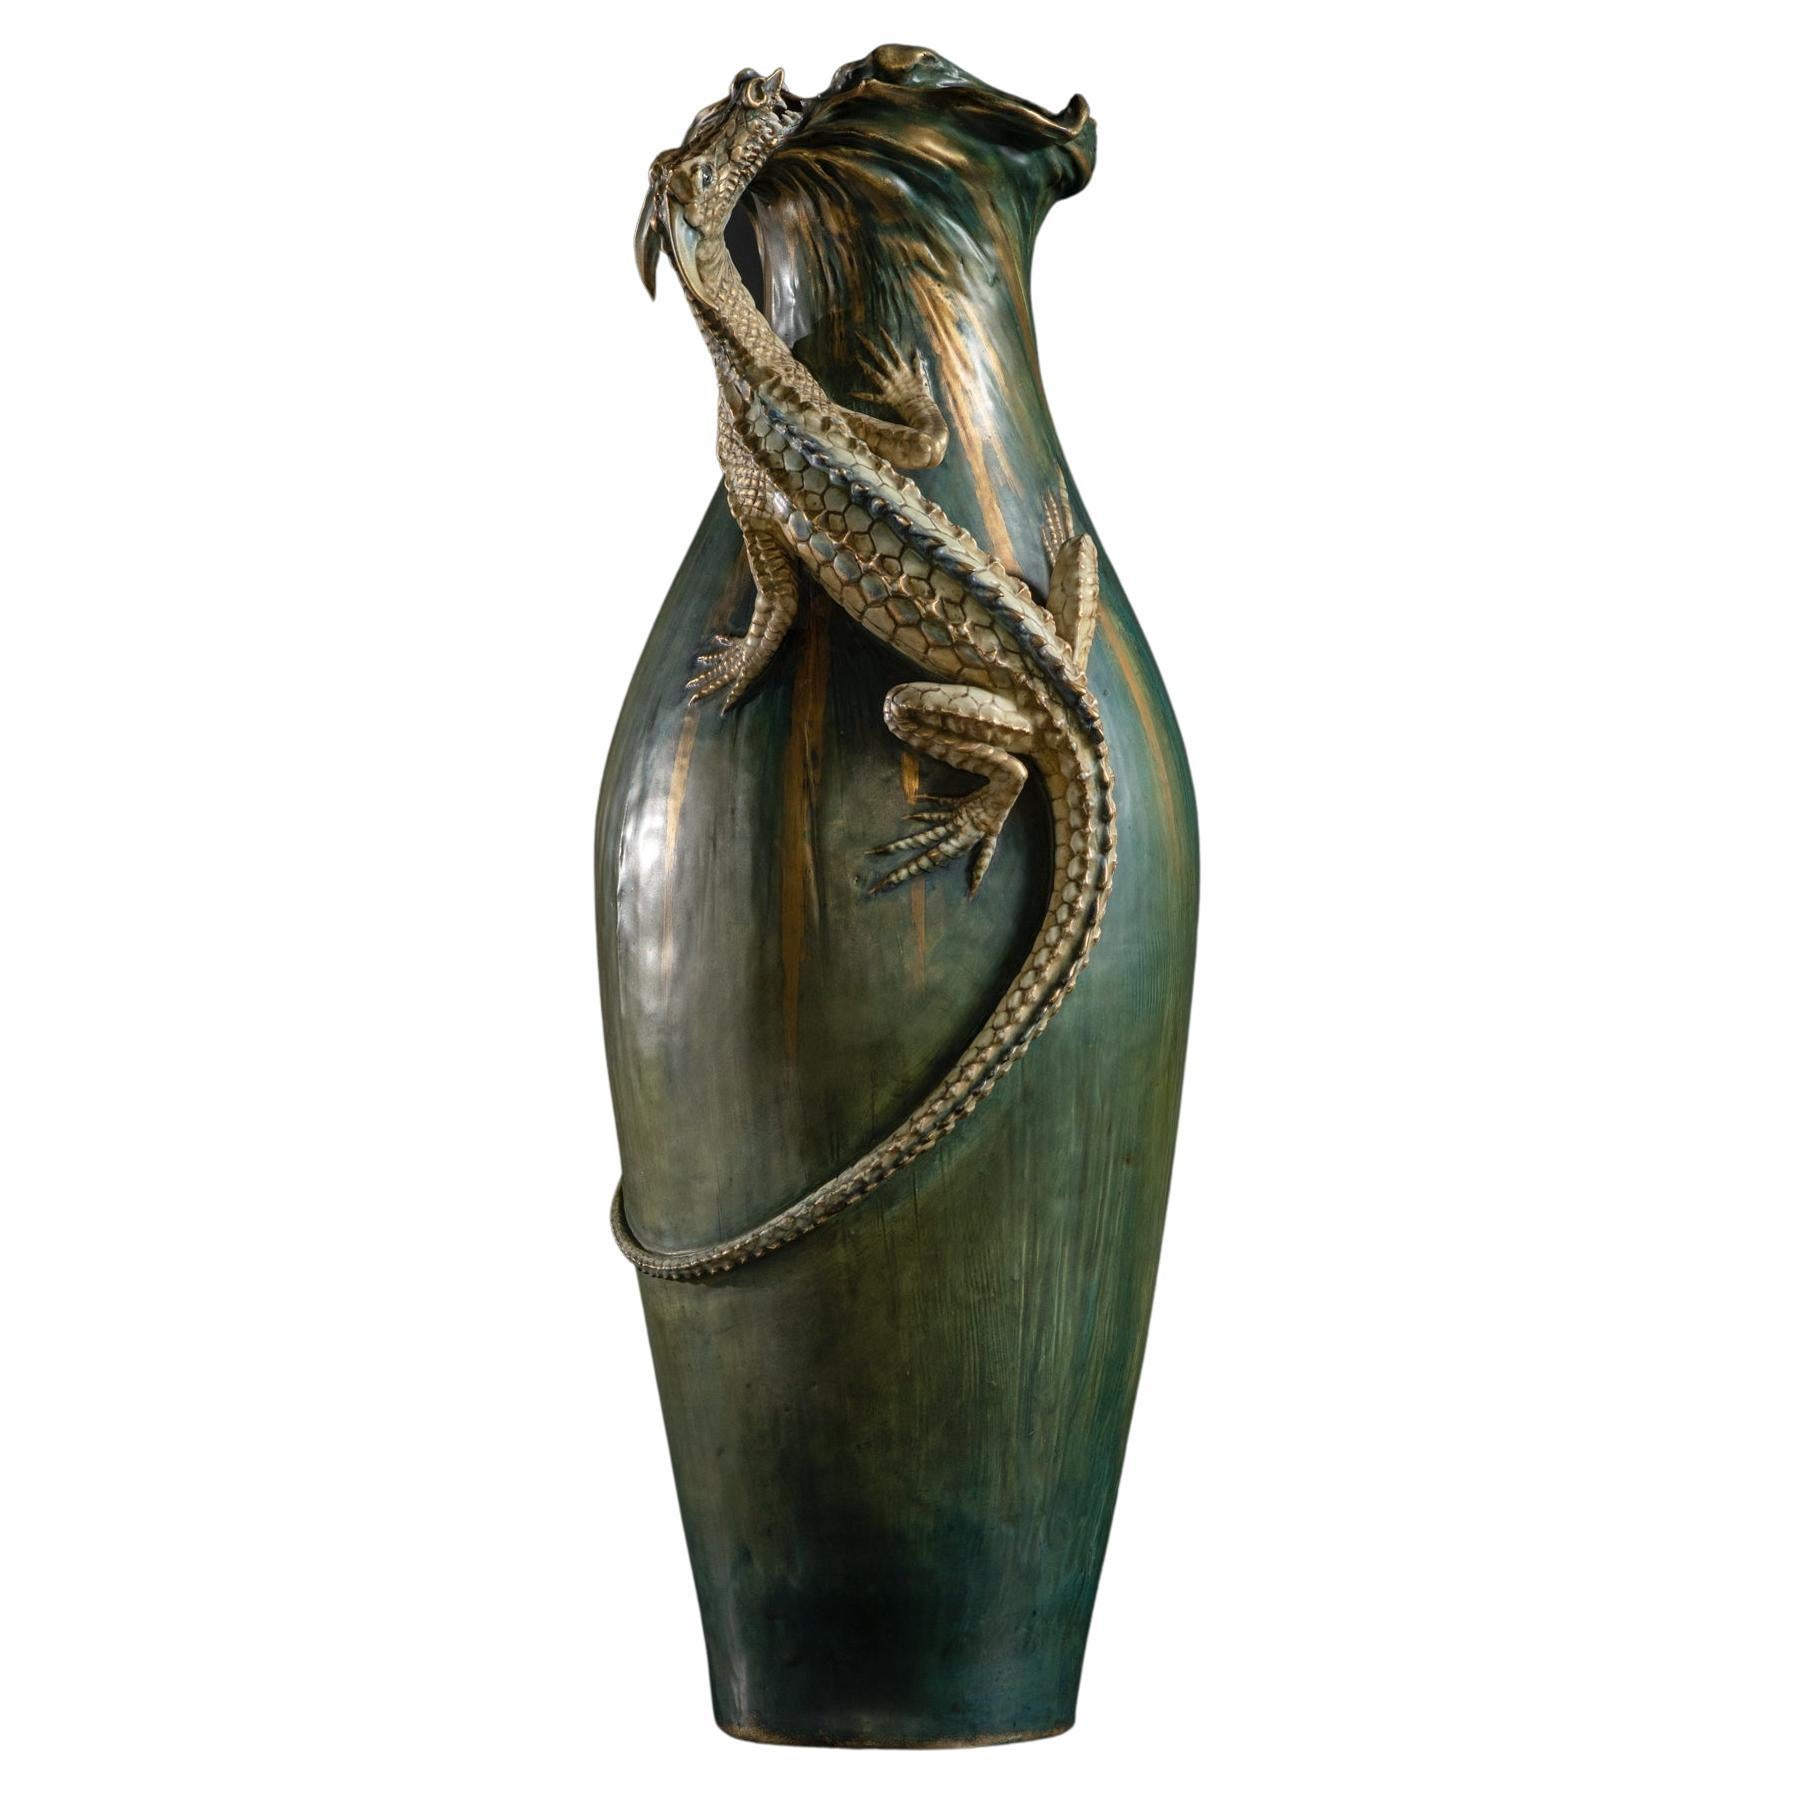 Vase monumental Amphora Art Nouveau avec Saurien par Eduard Stellmacher & Co.